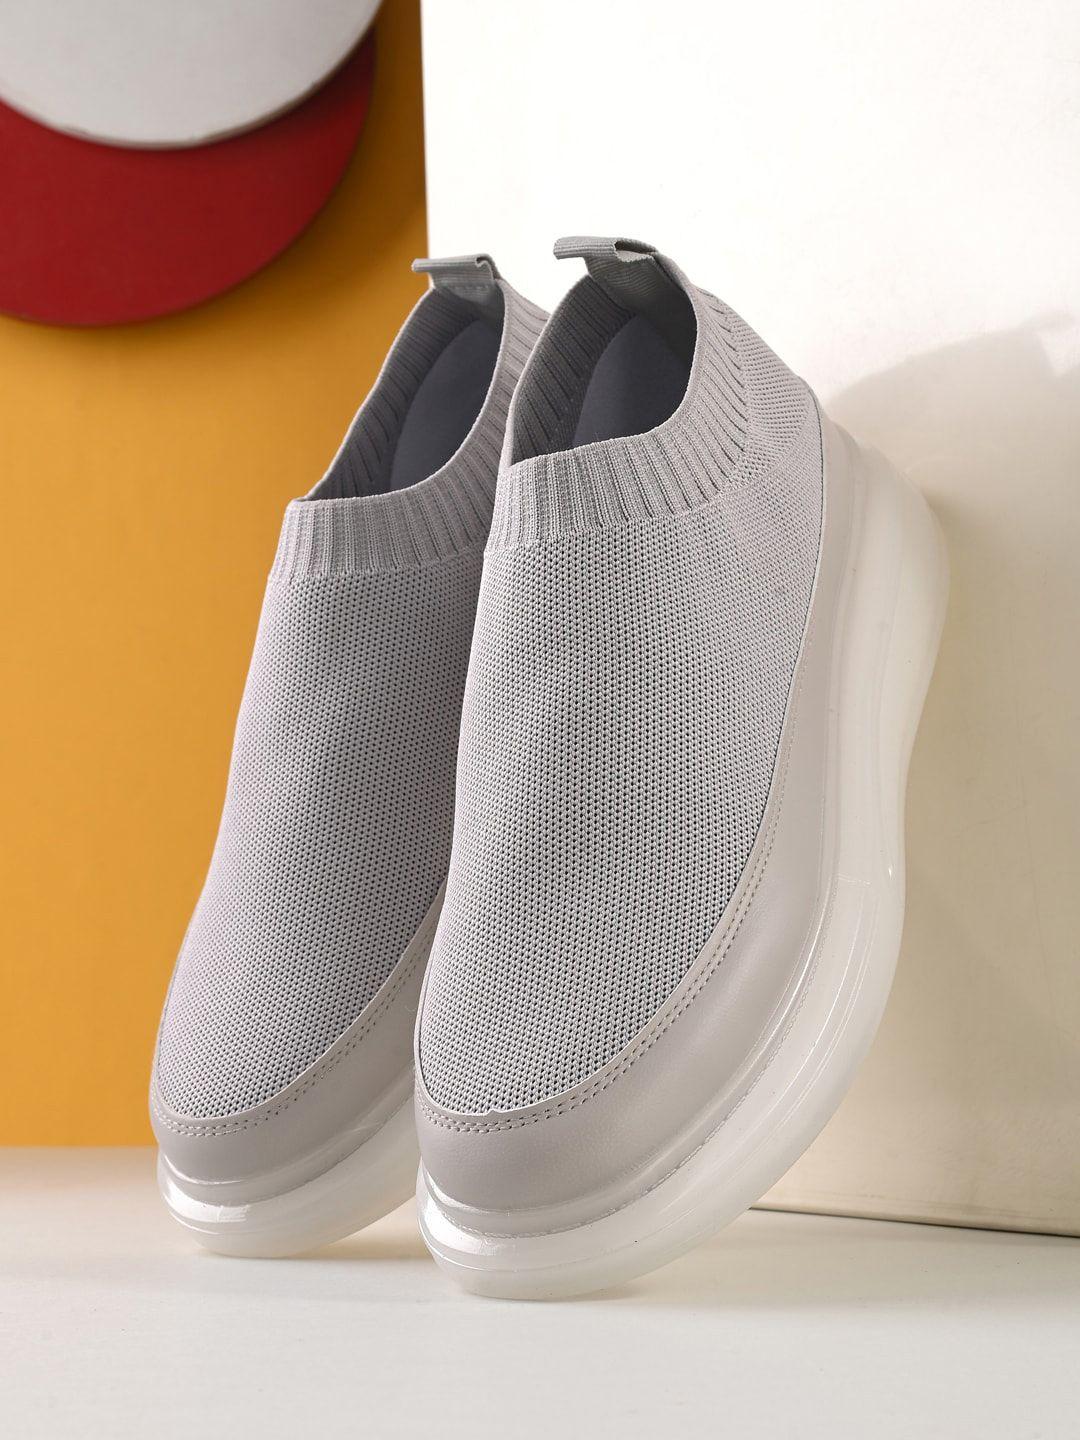 spykar men woven design knitted sweat absorbtion contrast sole slip-on sneakers